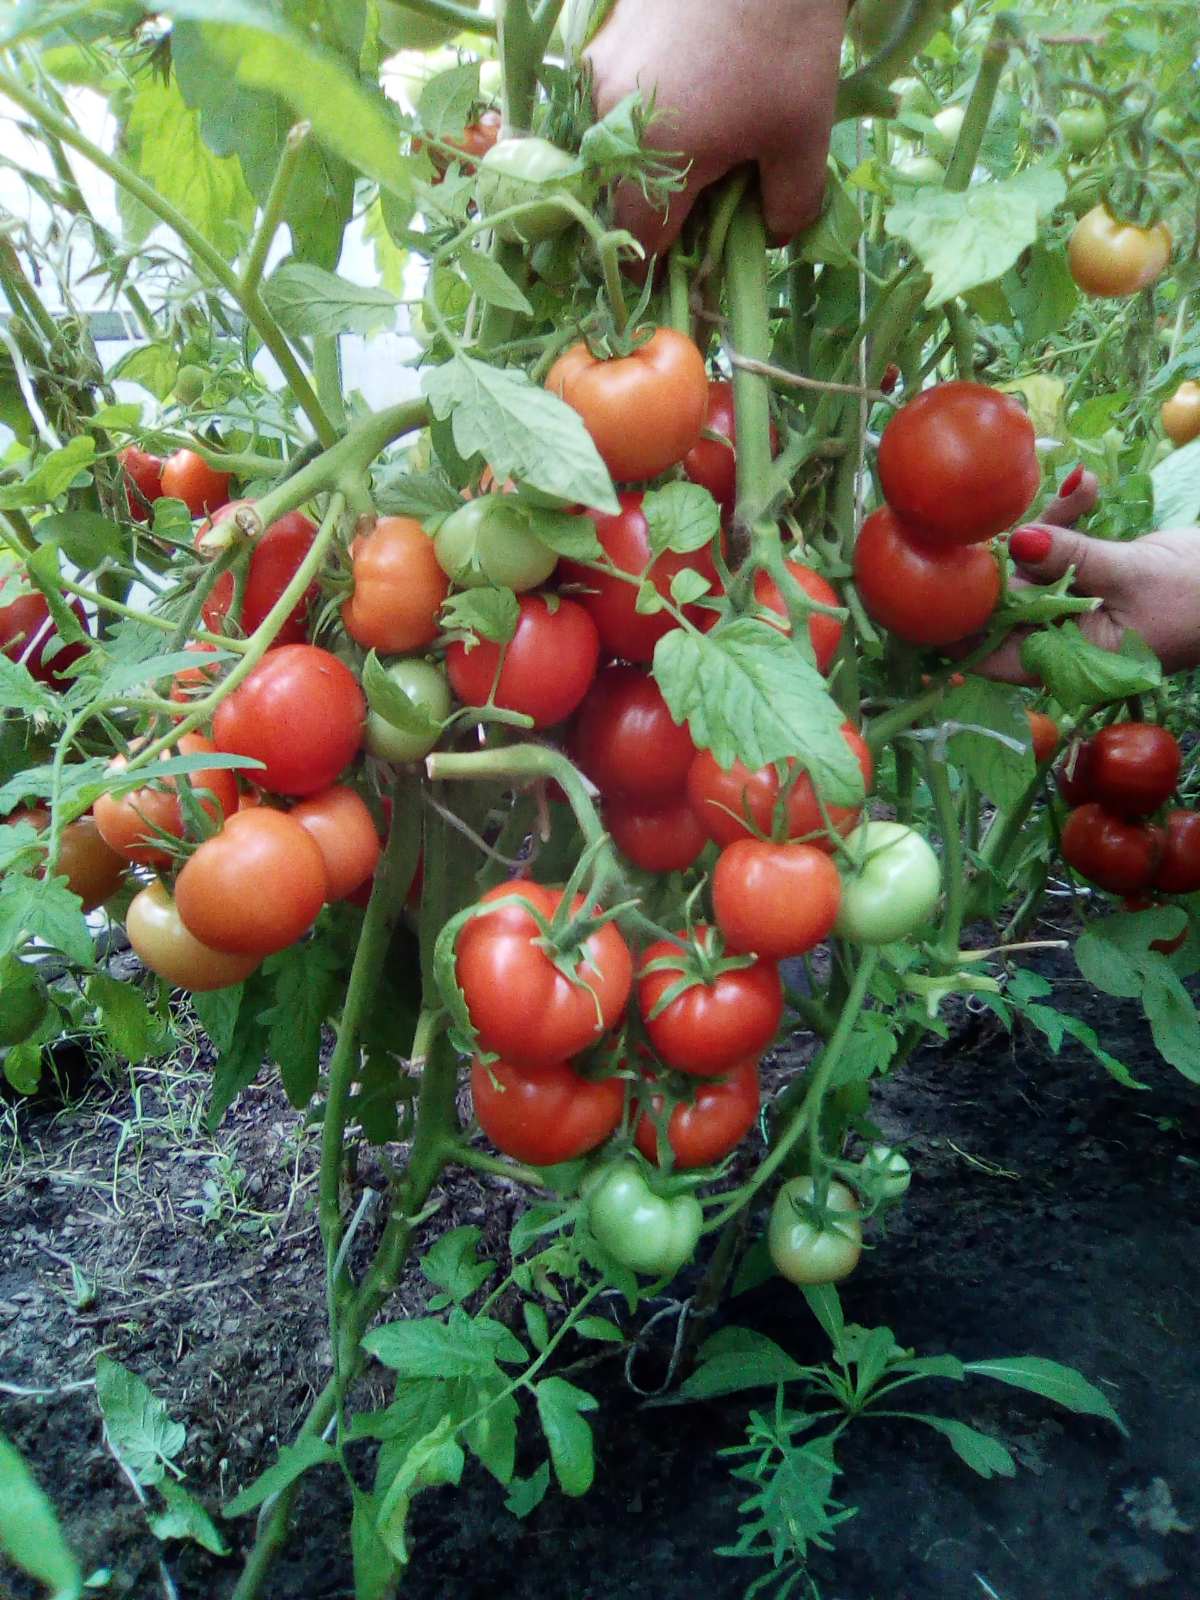 СОДЭБЦ рекомендует сорта и гибриды томатов для выращивания в открытом изащищенном грунтах Самарской области - Ленты новостей, объявлений,обновлений: ГБОУ ДО СО СОДЭБЦ